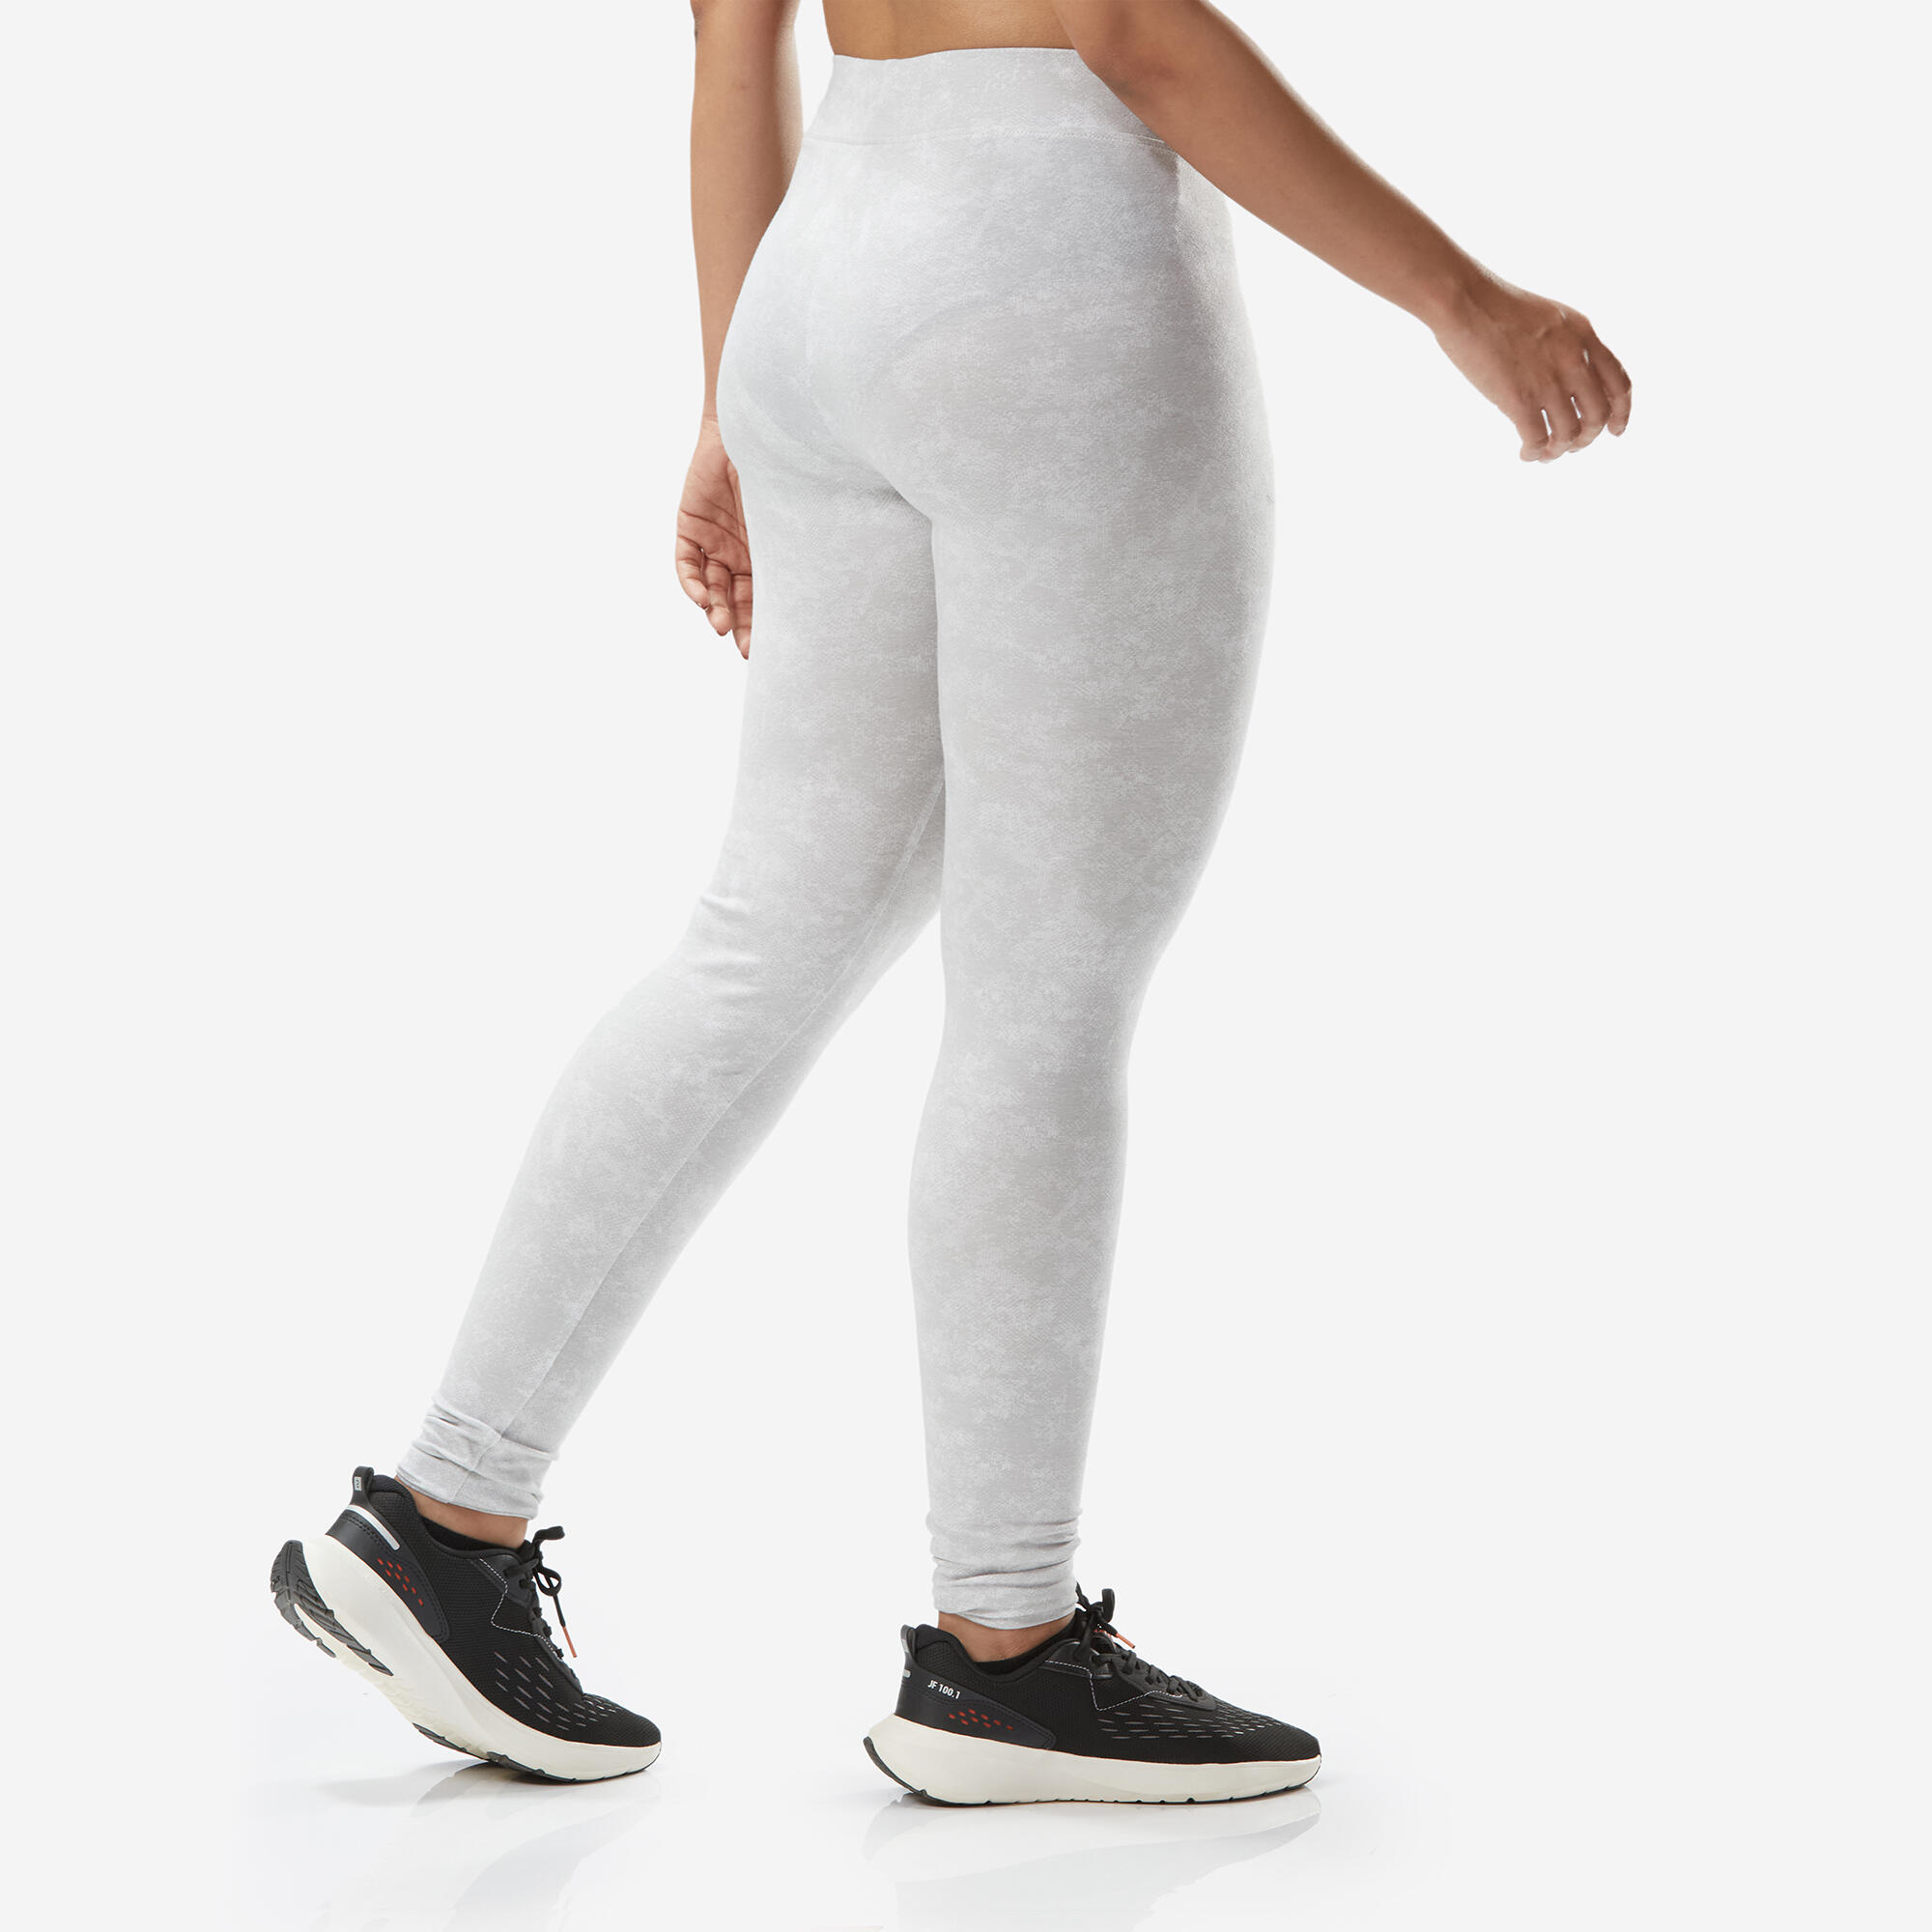 Women's Slim-Fit Fitness Leggings Fit+ 500 - Grey Print 5/6